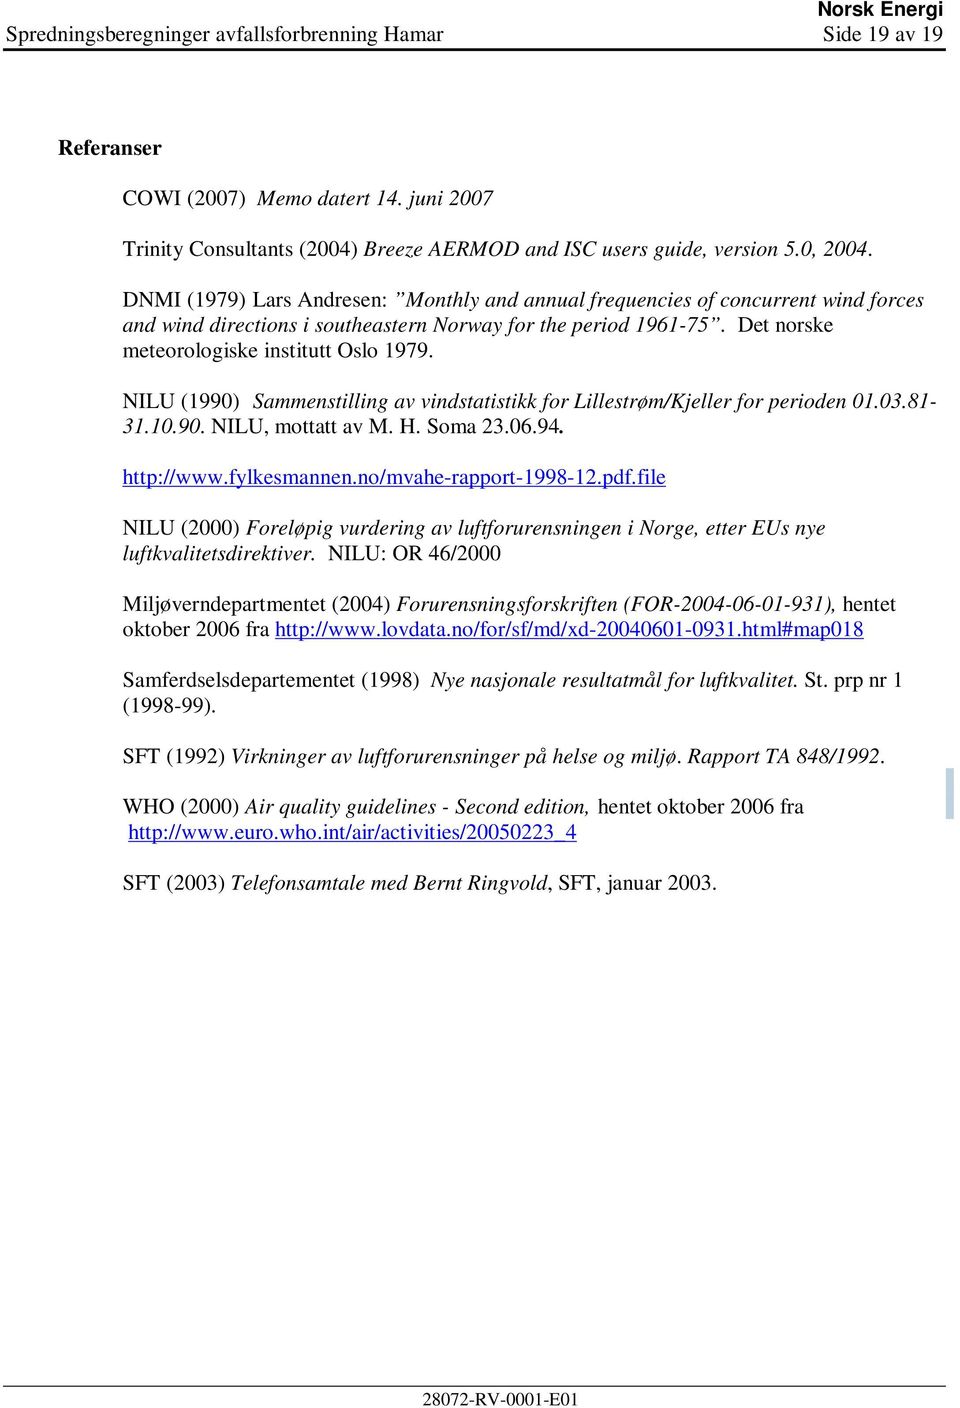 NILU (1990) Sammenstilling av vindstatistikk for Lillestrøm/Kjeller for perioden 01.03.81-31.10.90. NILU, mottatt av M. H. Soma 23.06.94. http://www.fylkesmannen.no/mvahe-rapport-1998-12.pdf.